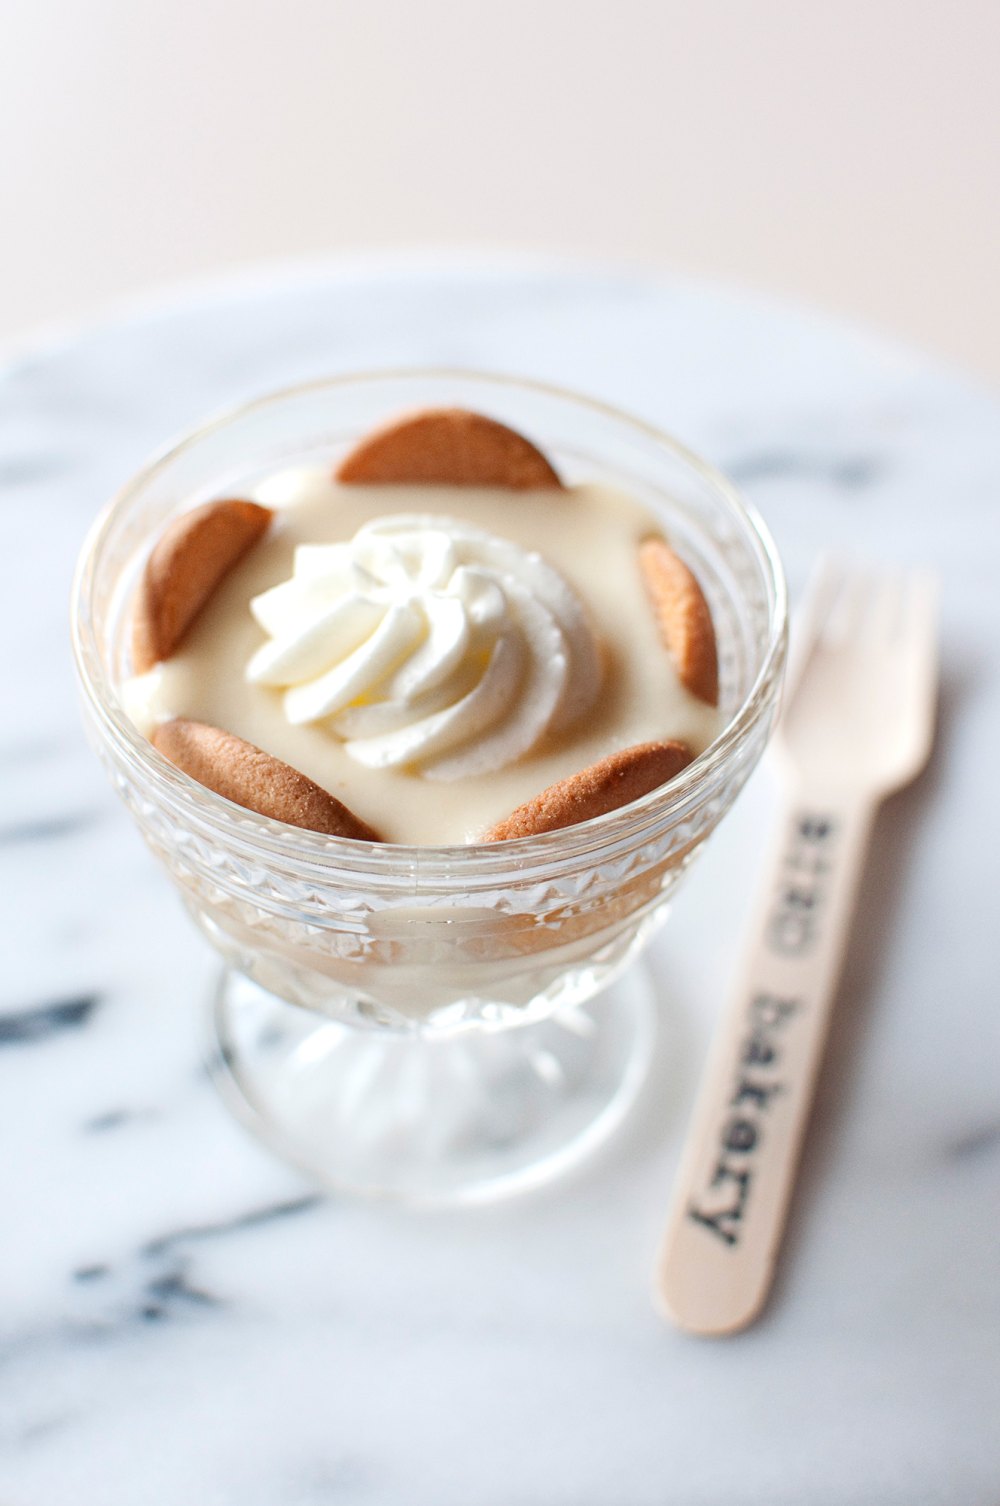 La recette de pudding à la banane d'Elizabeth Chambers s'inspire des souvenirs de pâtisserie avec sa grand-mère